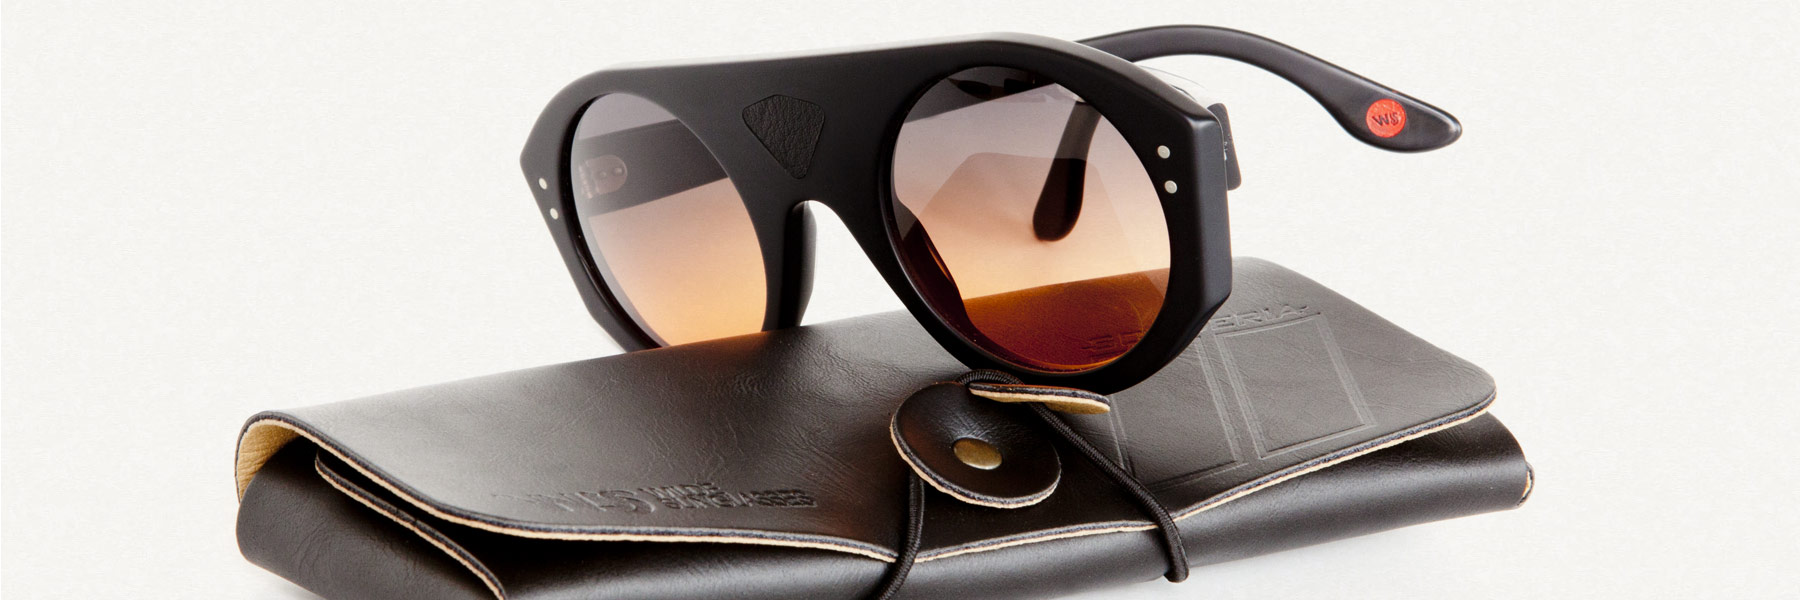 Wilde-Sunglasses-Occhiali-Lambo-driver-Collection-Collezione-2015-2016-Barcelona_Sunglasses_design_by_rob_adalierd4.jpg